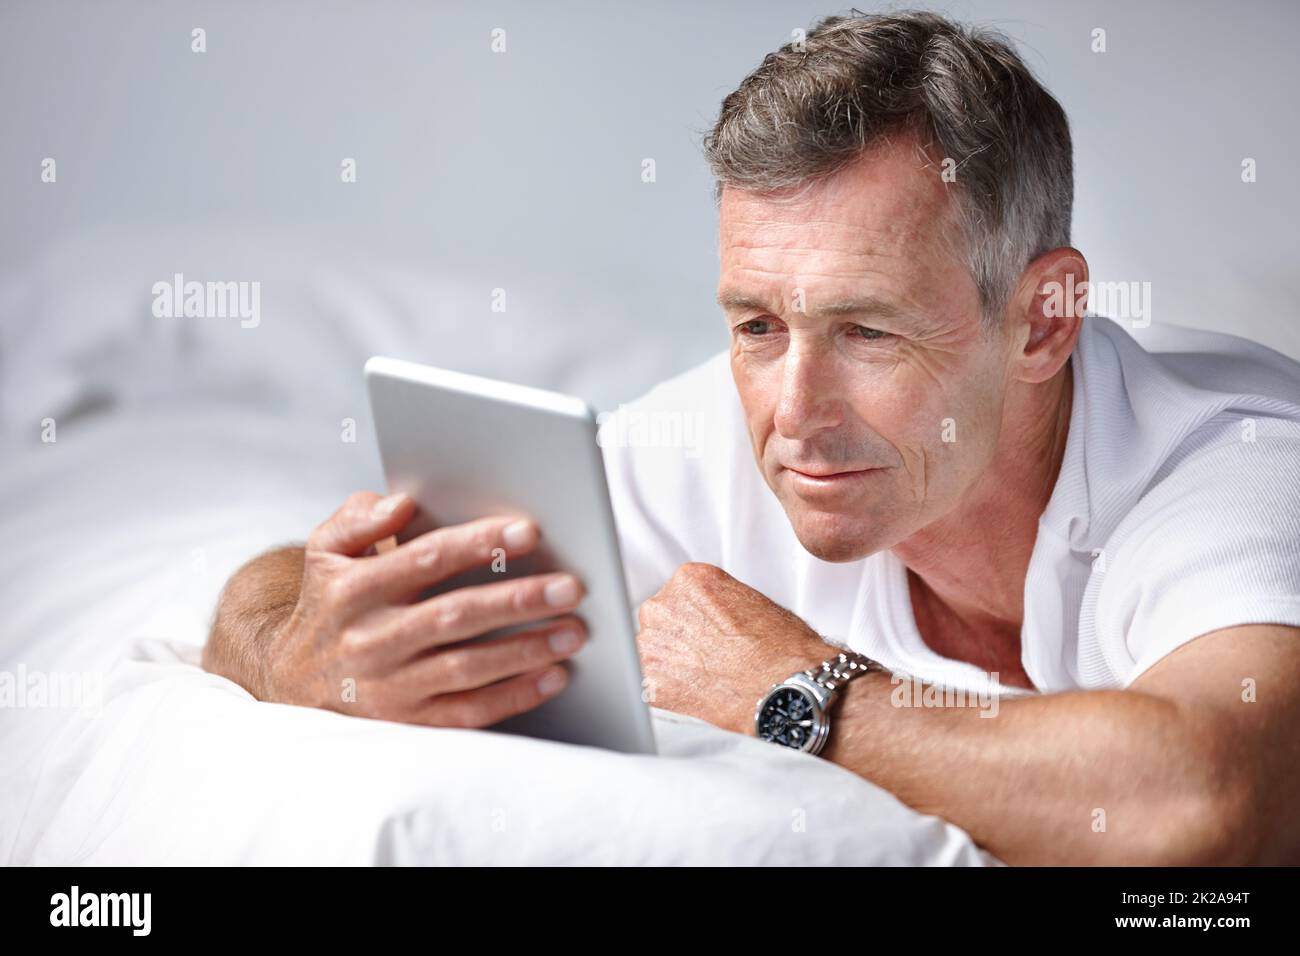 Leggere un interessante articolo online. Scatto di un uomo maturo usando un tablet digitale mentre si trova sul suo letto. Foto Stock